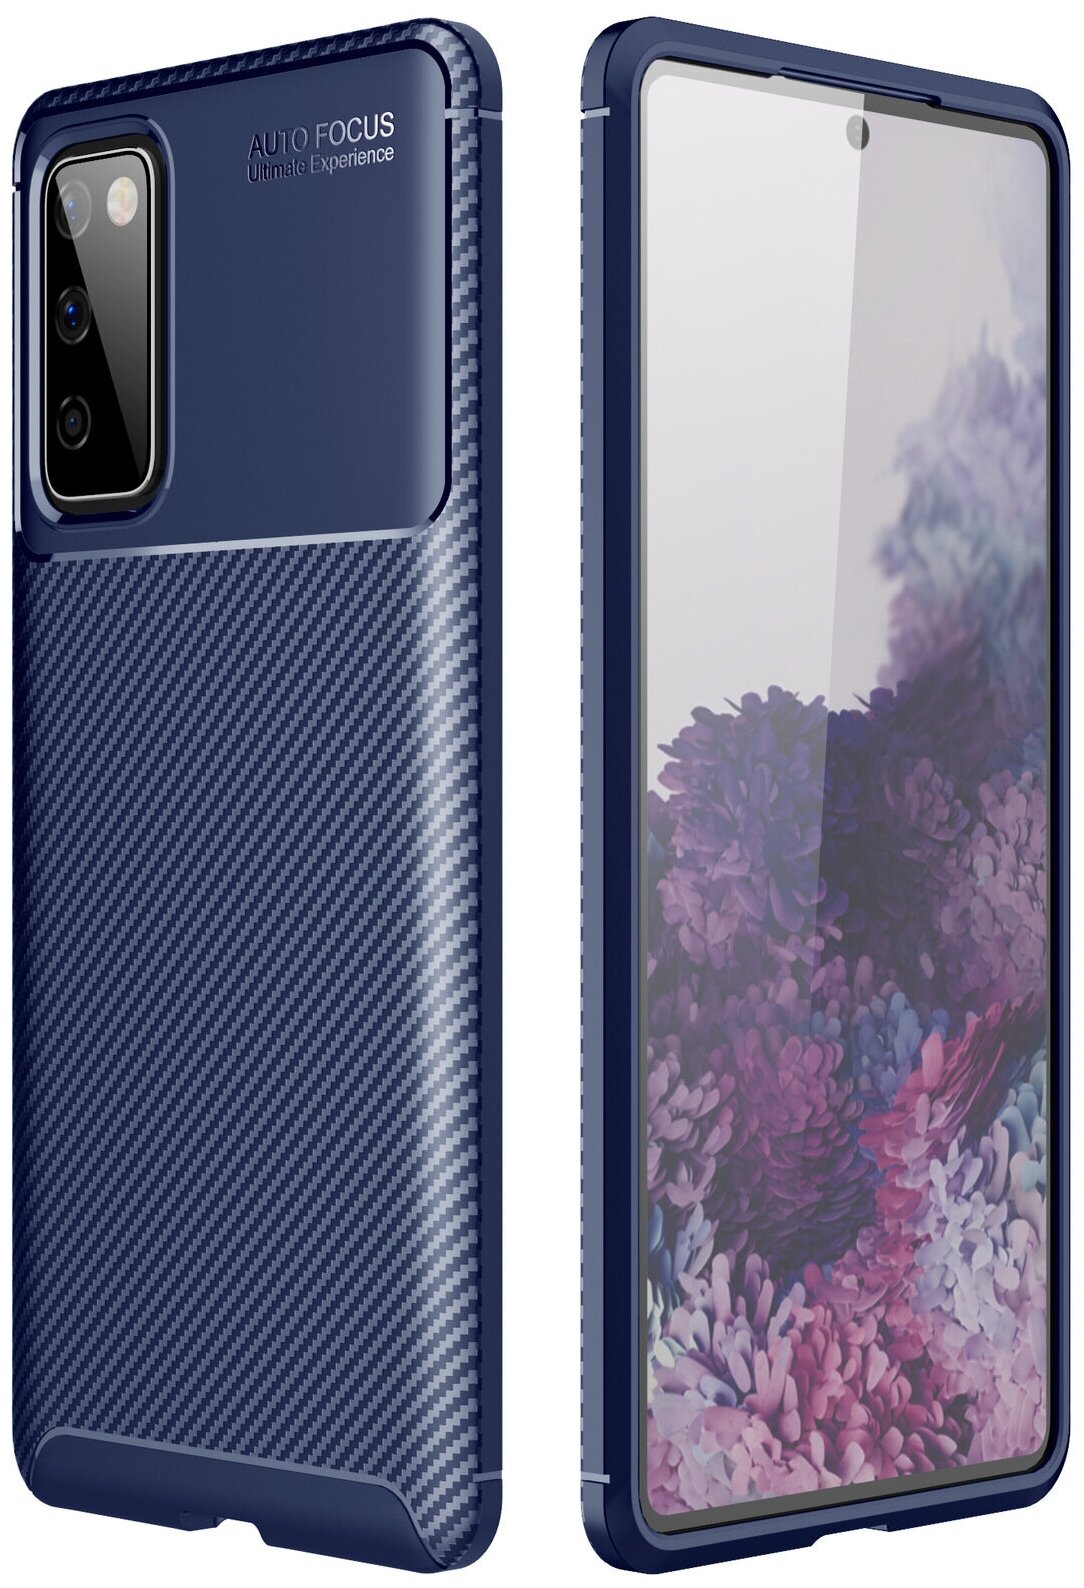 Чехол панель-бампер MyPads для Samsung Galaxy S20FE (Fun Edition) SM-G780F 2020 / Samsung Galaxy S20 Lite из прочного силикона с матовой отделкой.